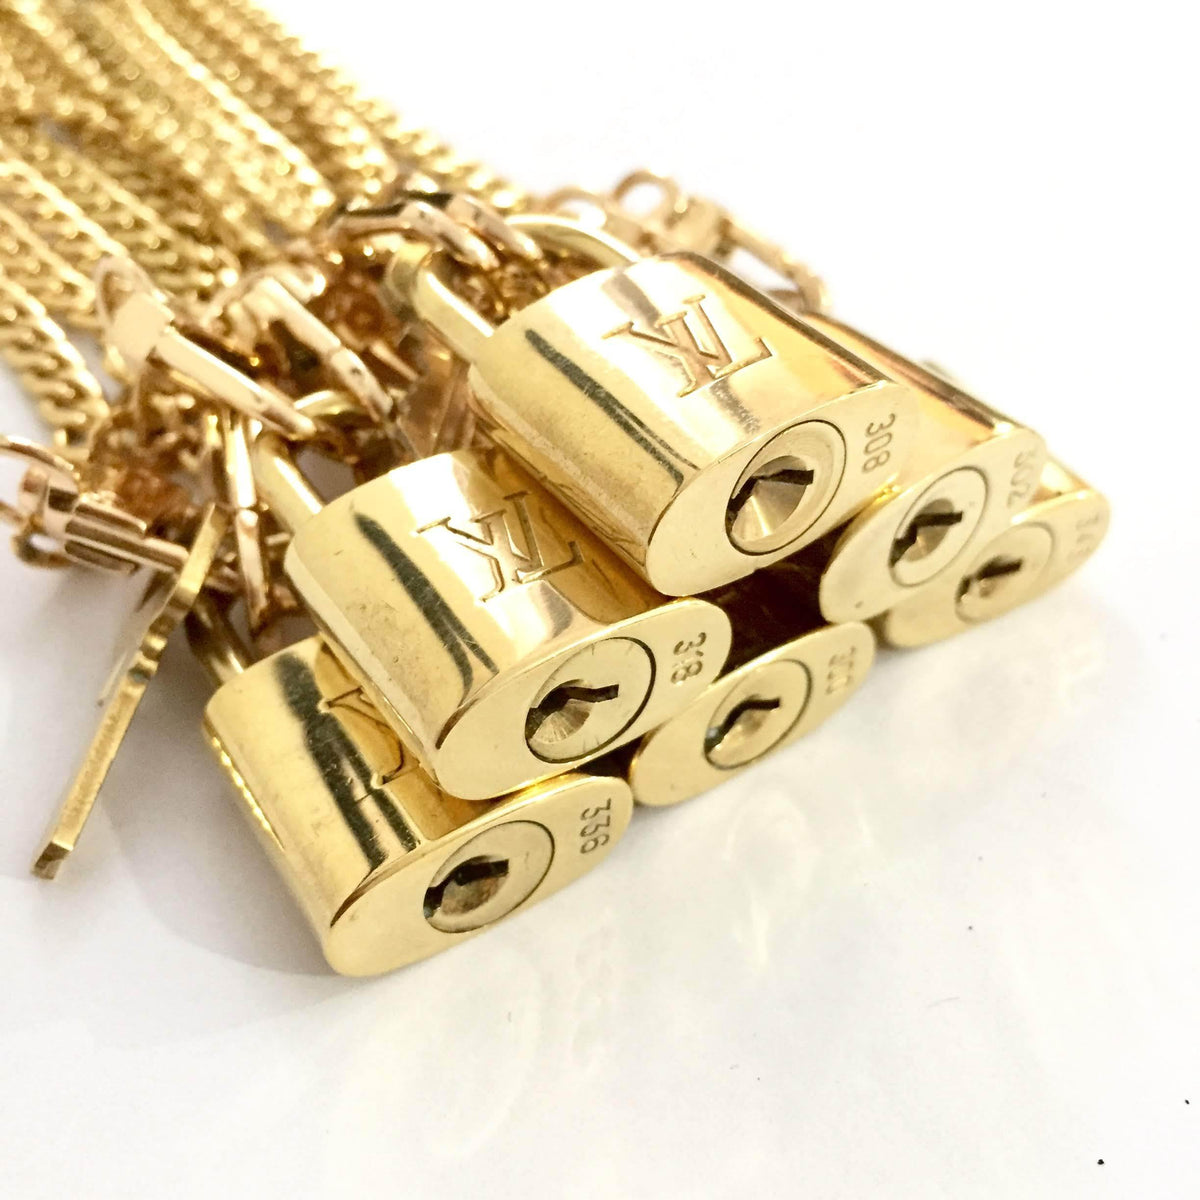 Louis Vuitton Padlock & Key Bag Accessories Charm 10 Piece Set Gold Auction